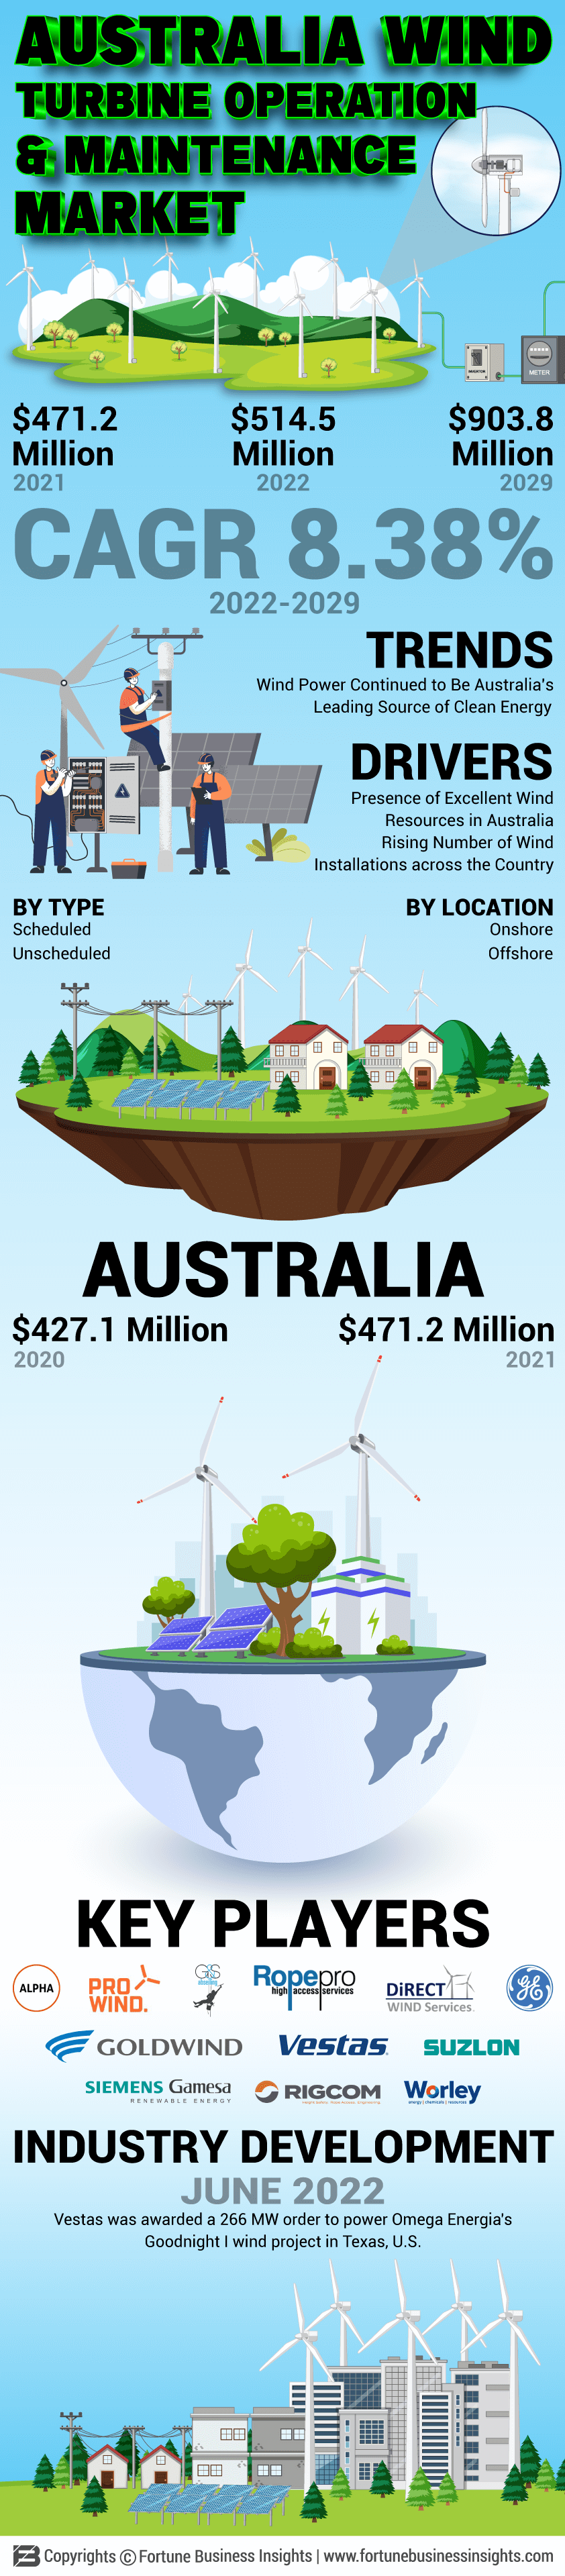 澳大利亚风力涡轮机操作和维护市场